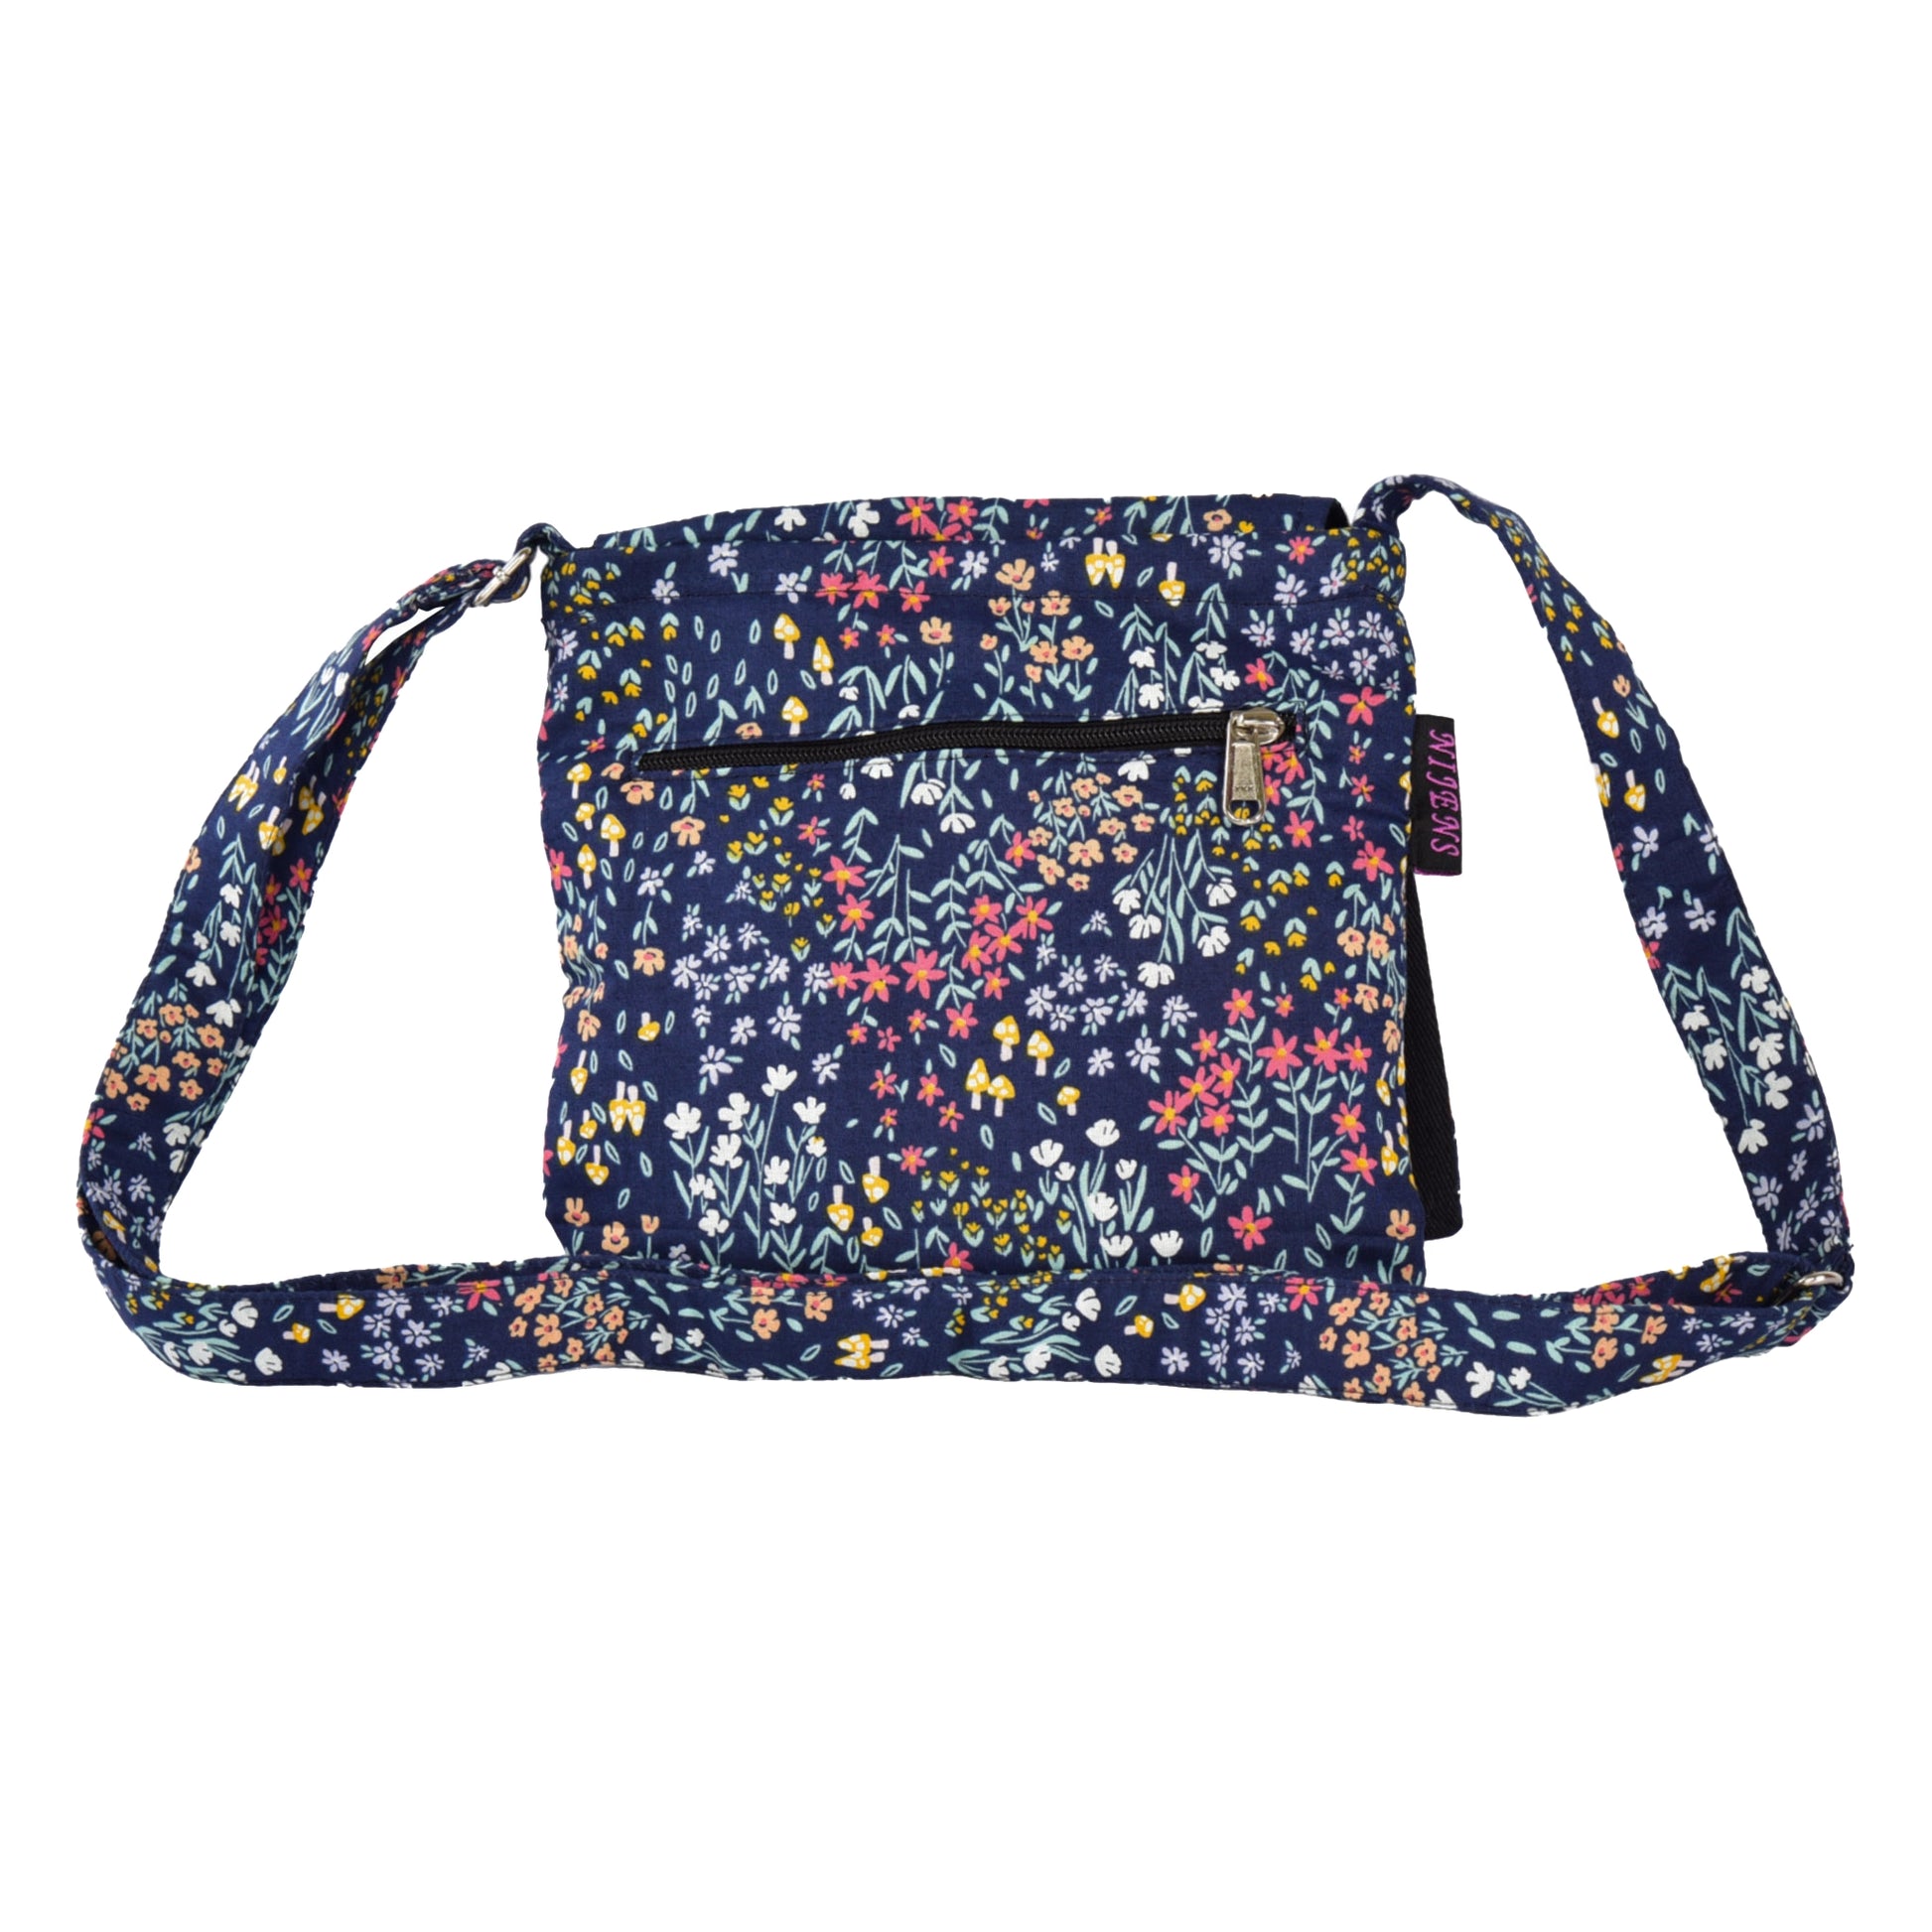 Hinteransicht: Kleine Tasche, Umhängetasche aus Baumwolle, dunkelblau und Blumenmuster mit Reißverschlussfach auf der hinteren Seite.